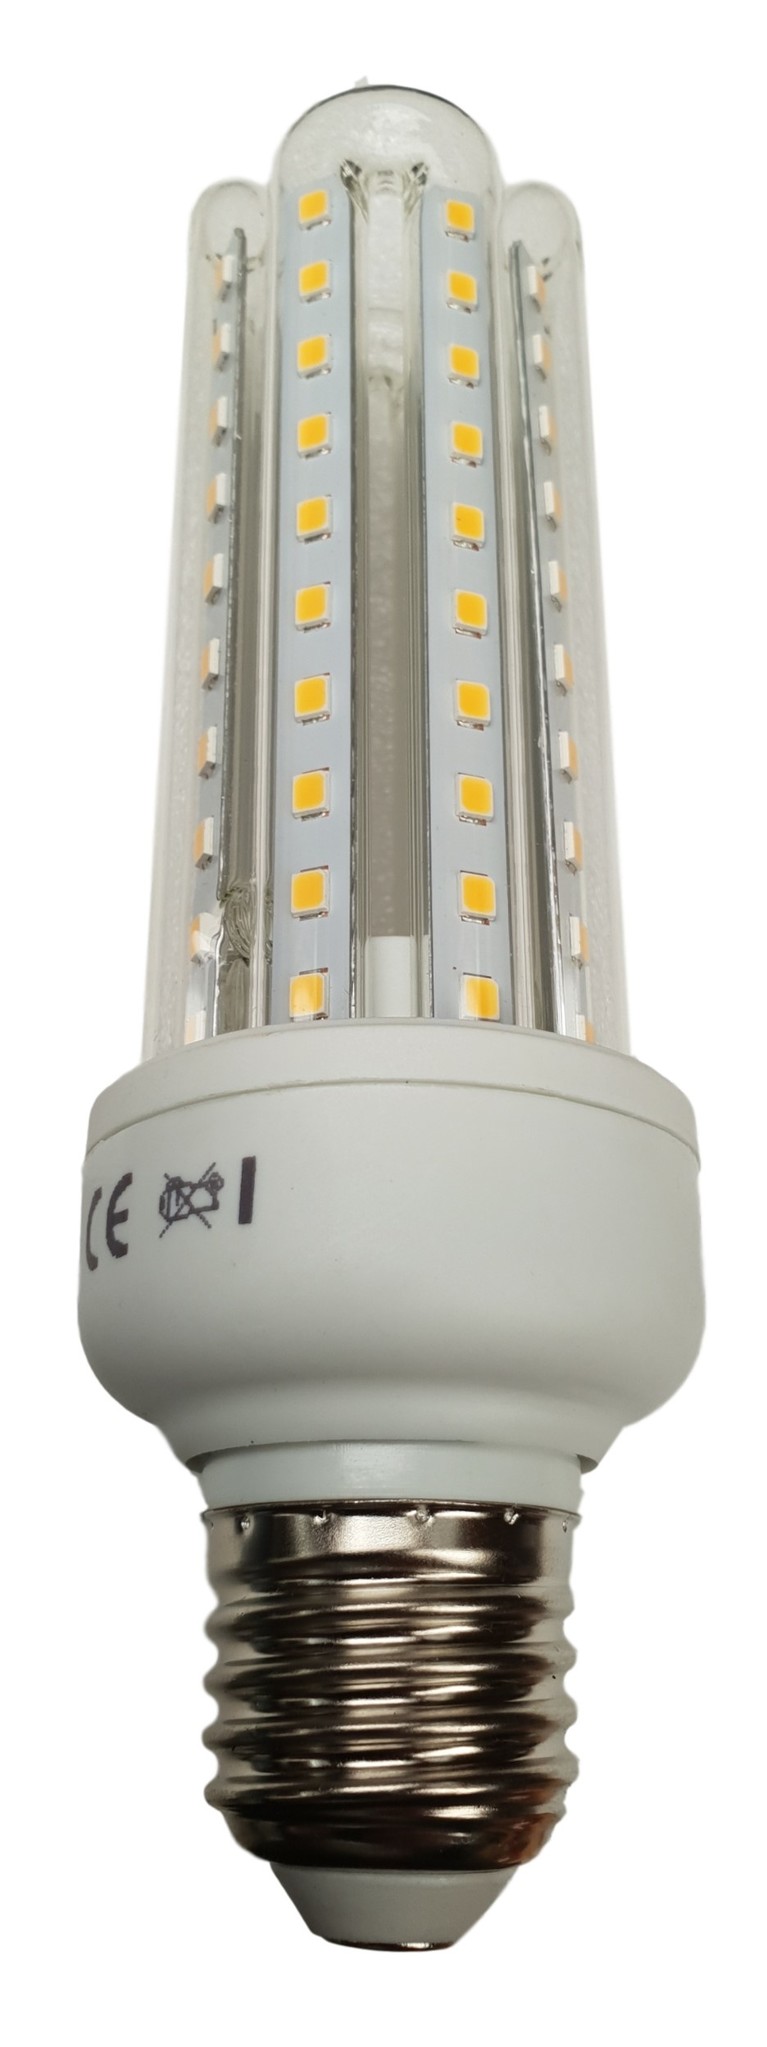 Harden munt Eenzaamheid Spaarlamp E27 | LED 15W=120W gloeilamp | warmwit 3000K